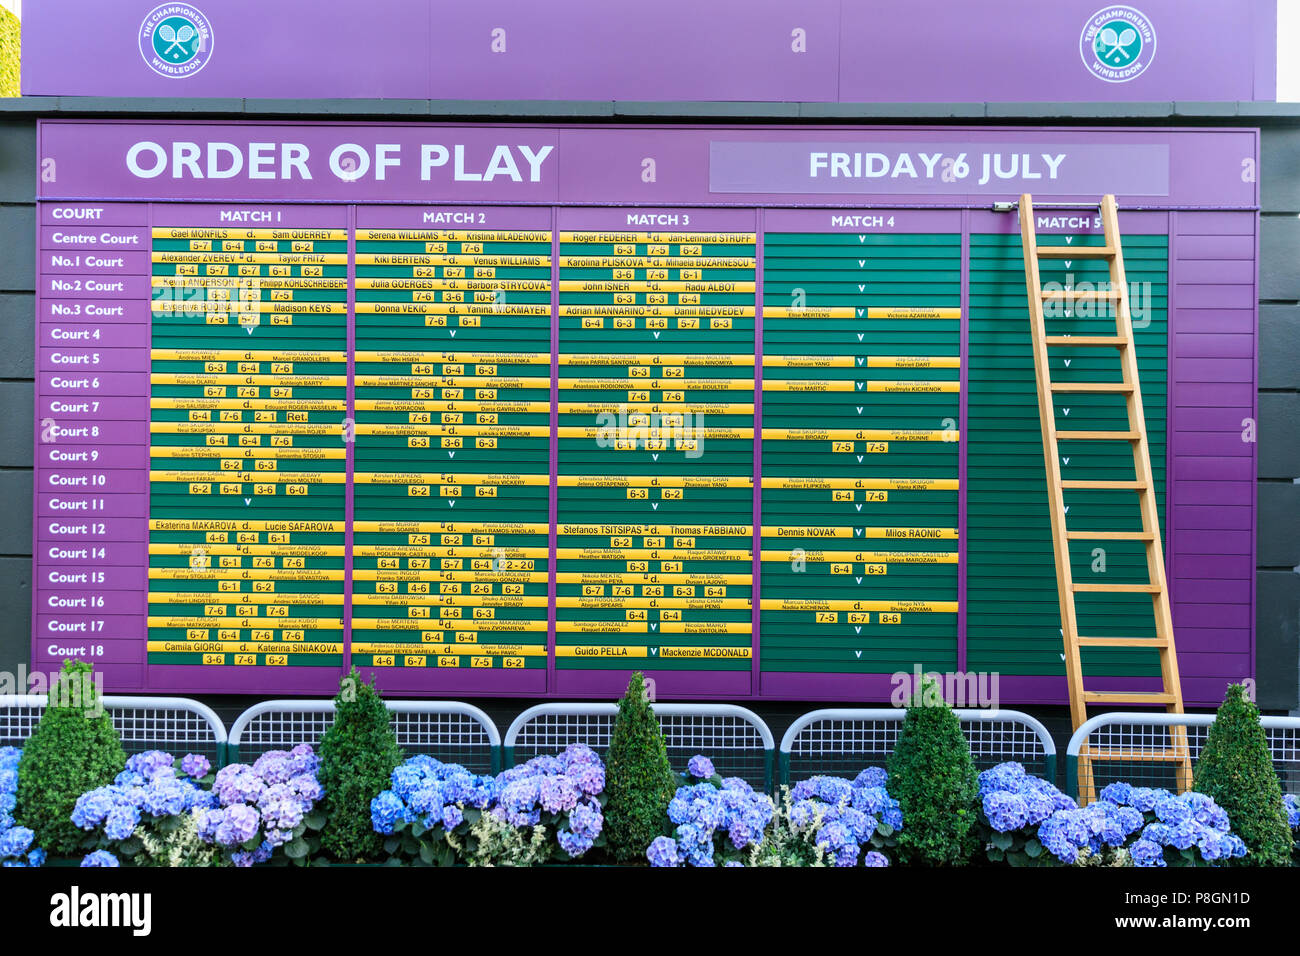 L'ordine di gioco del giorno information board con gli elenchi dei programmi per i giocatori e la corrispondenza con i campionati di Wimbledon, Regno Unito Foto Stock